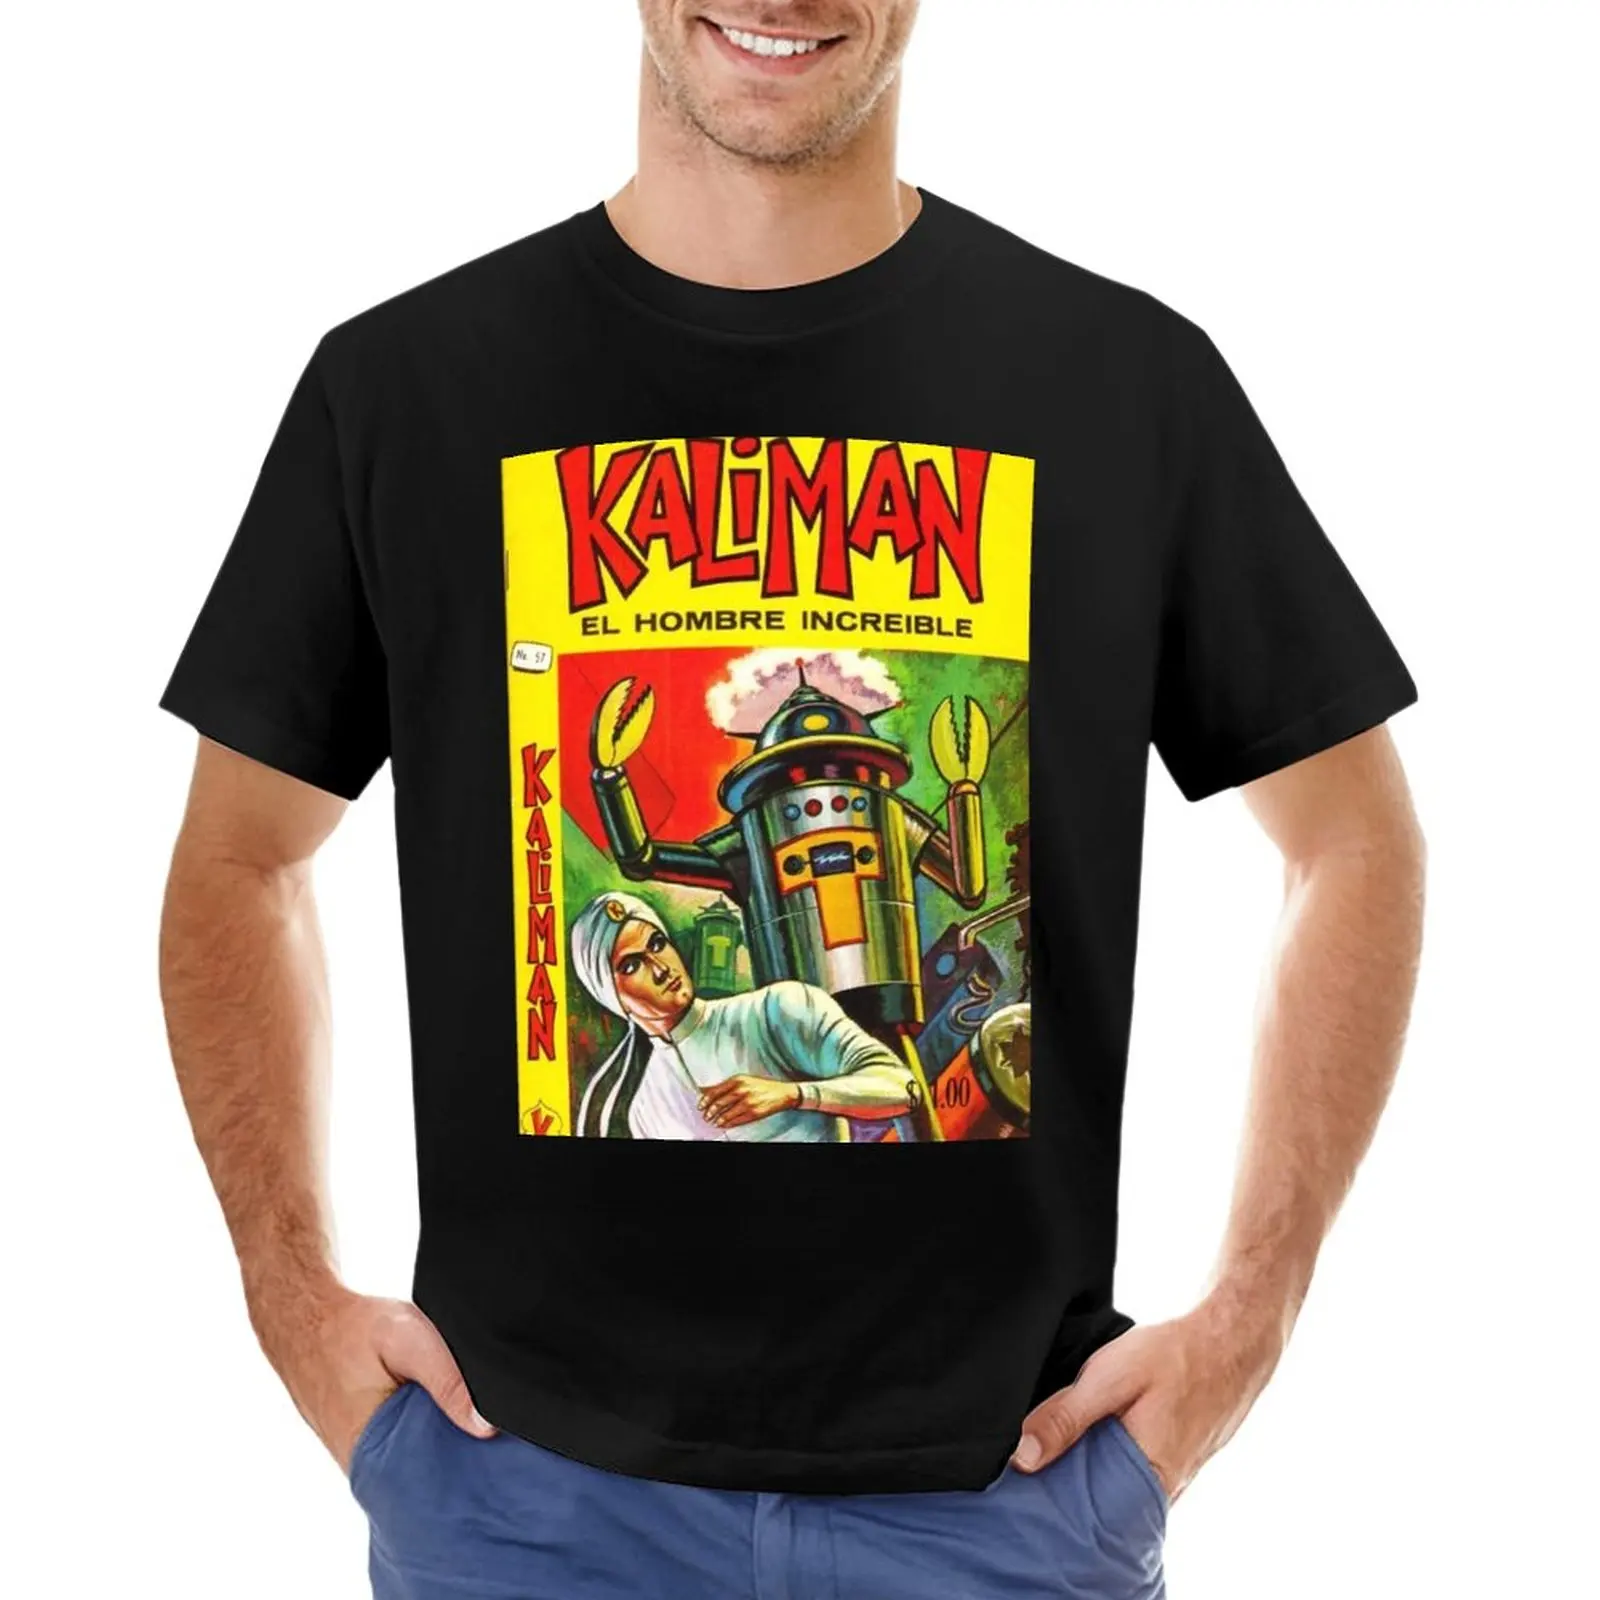 Футболка KALIMAN VS ROBOT, футболки с коротким рукавом, футболки для мальчиков, футболки для мужчин